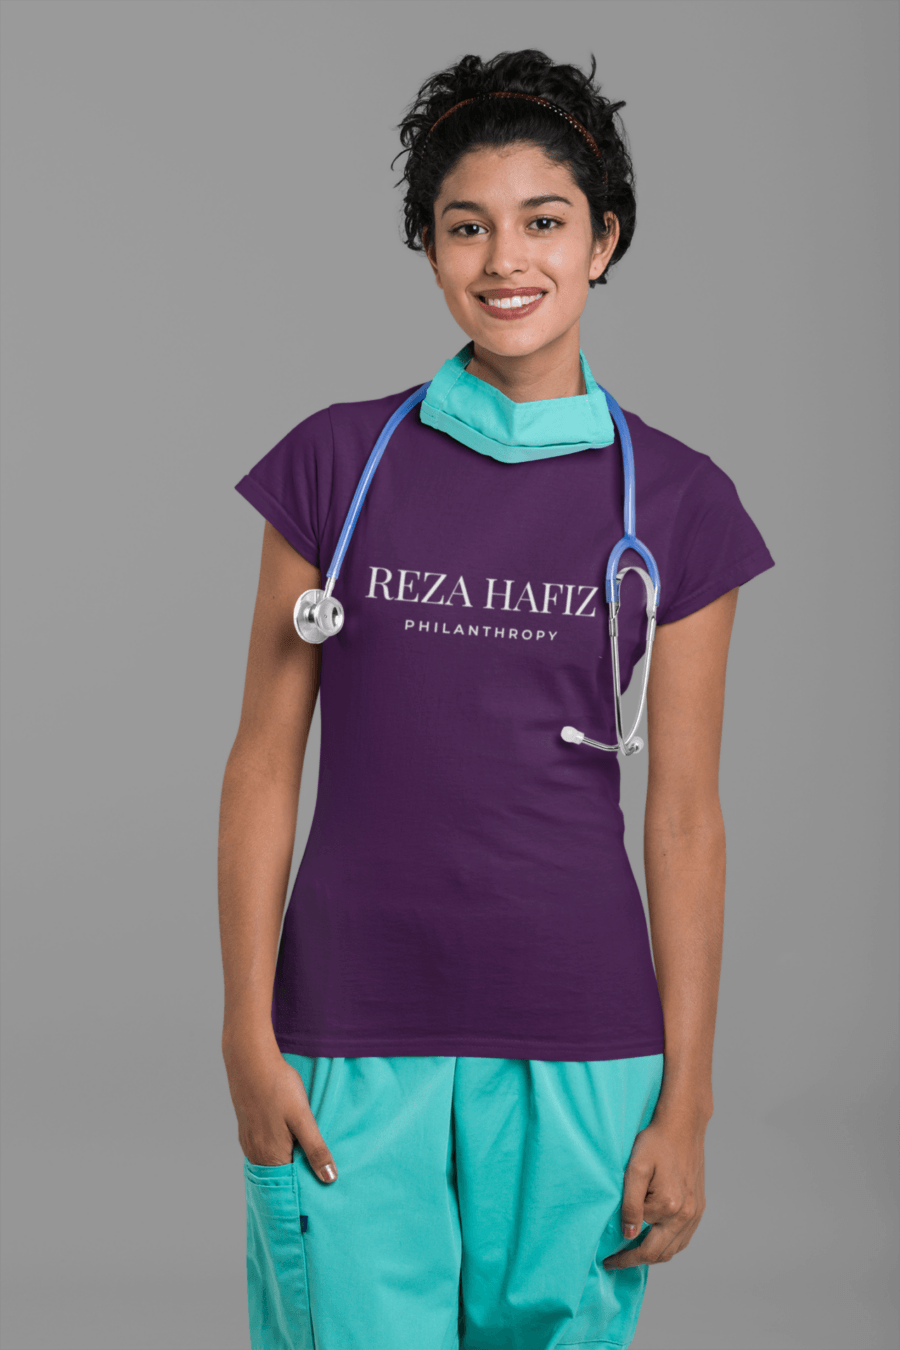 REZA HAFIZ HEALTH